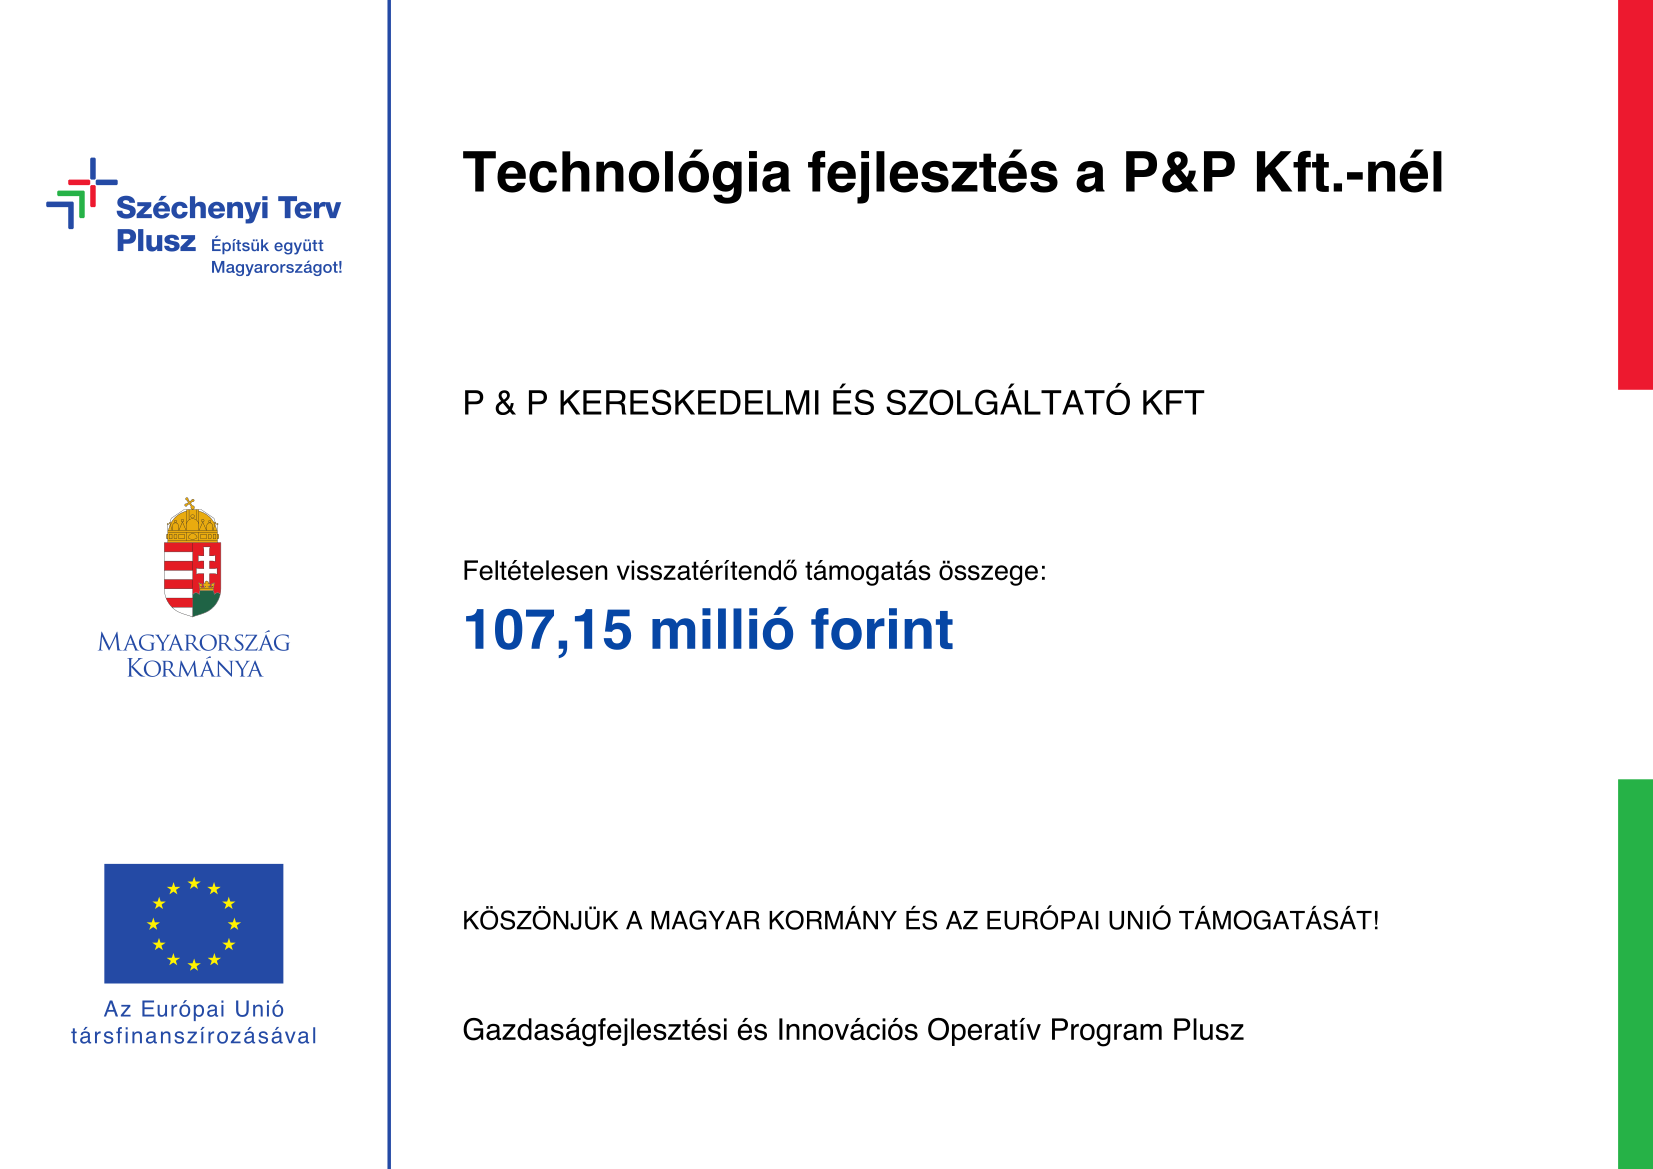 P&P GINOP PLUSZ 1.2.3 21 2022 02011